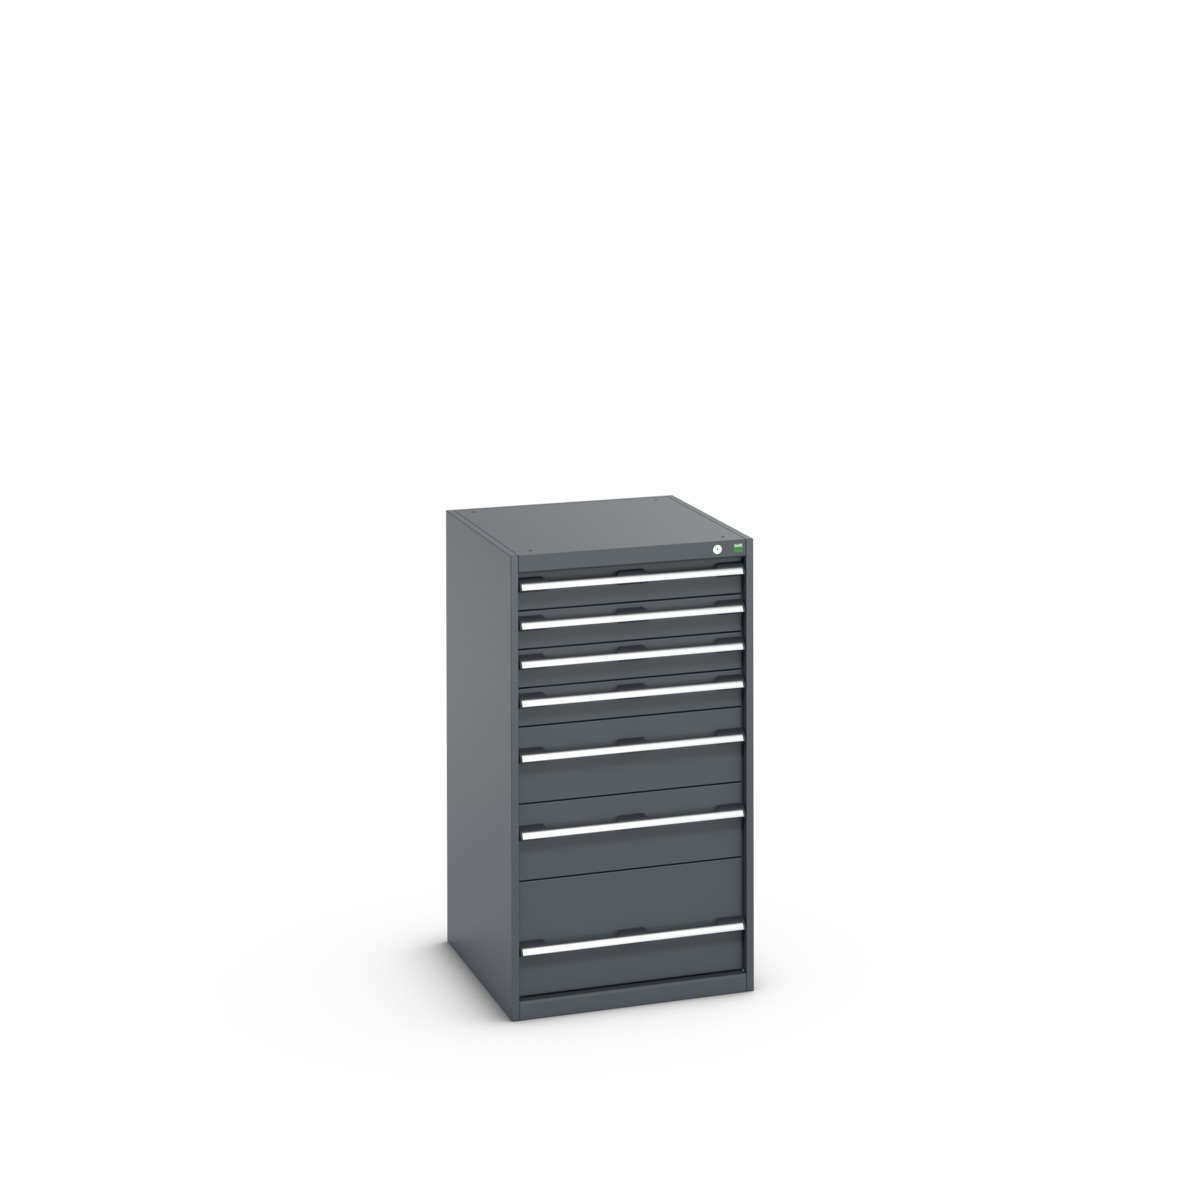 40027037.77V - cubio drawer cabinet